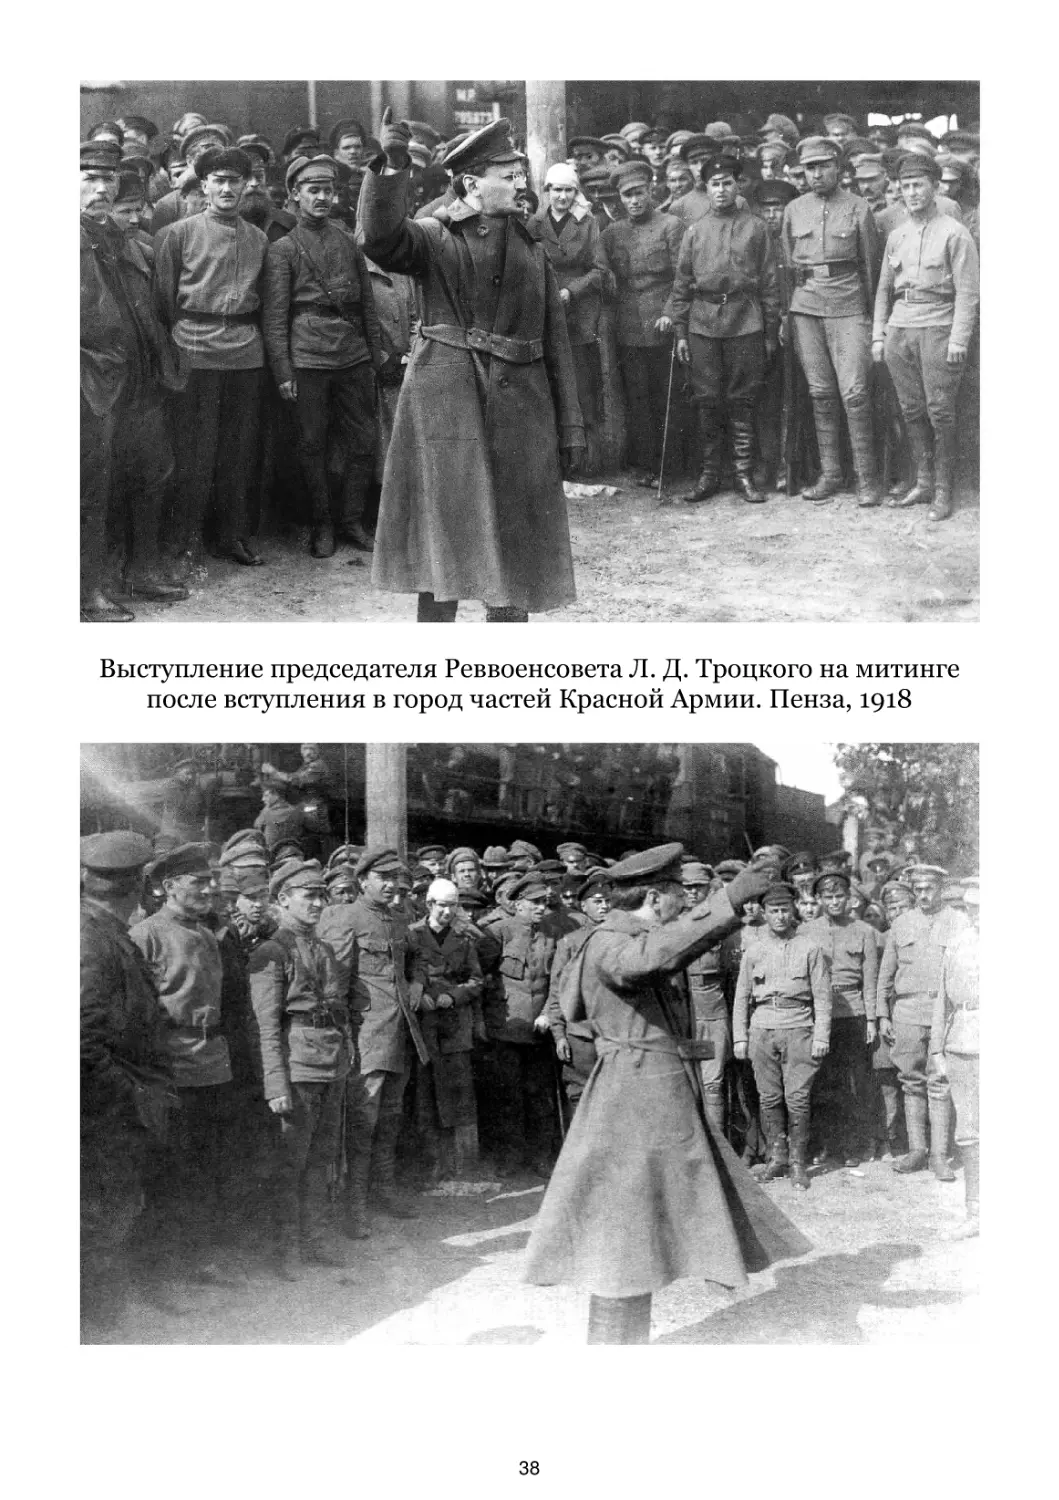 Выступление Л. Д. Троцкого на митинге после вступления в город частей Красной Армии. Пенза, 1918